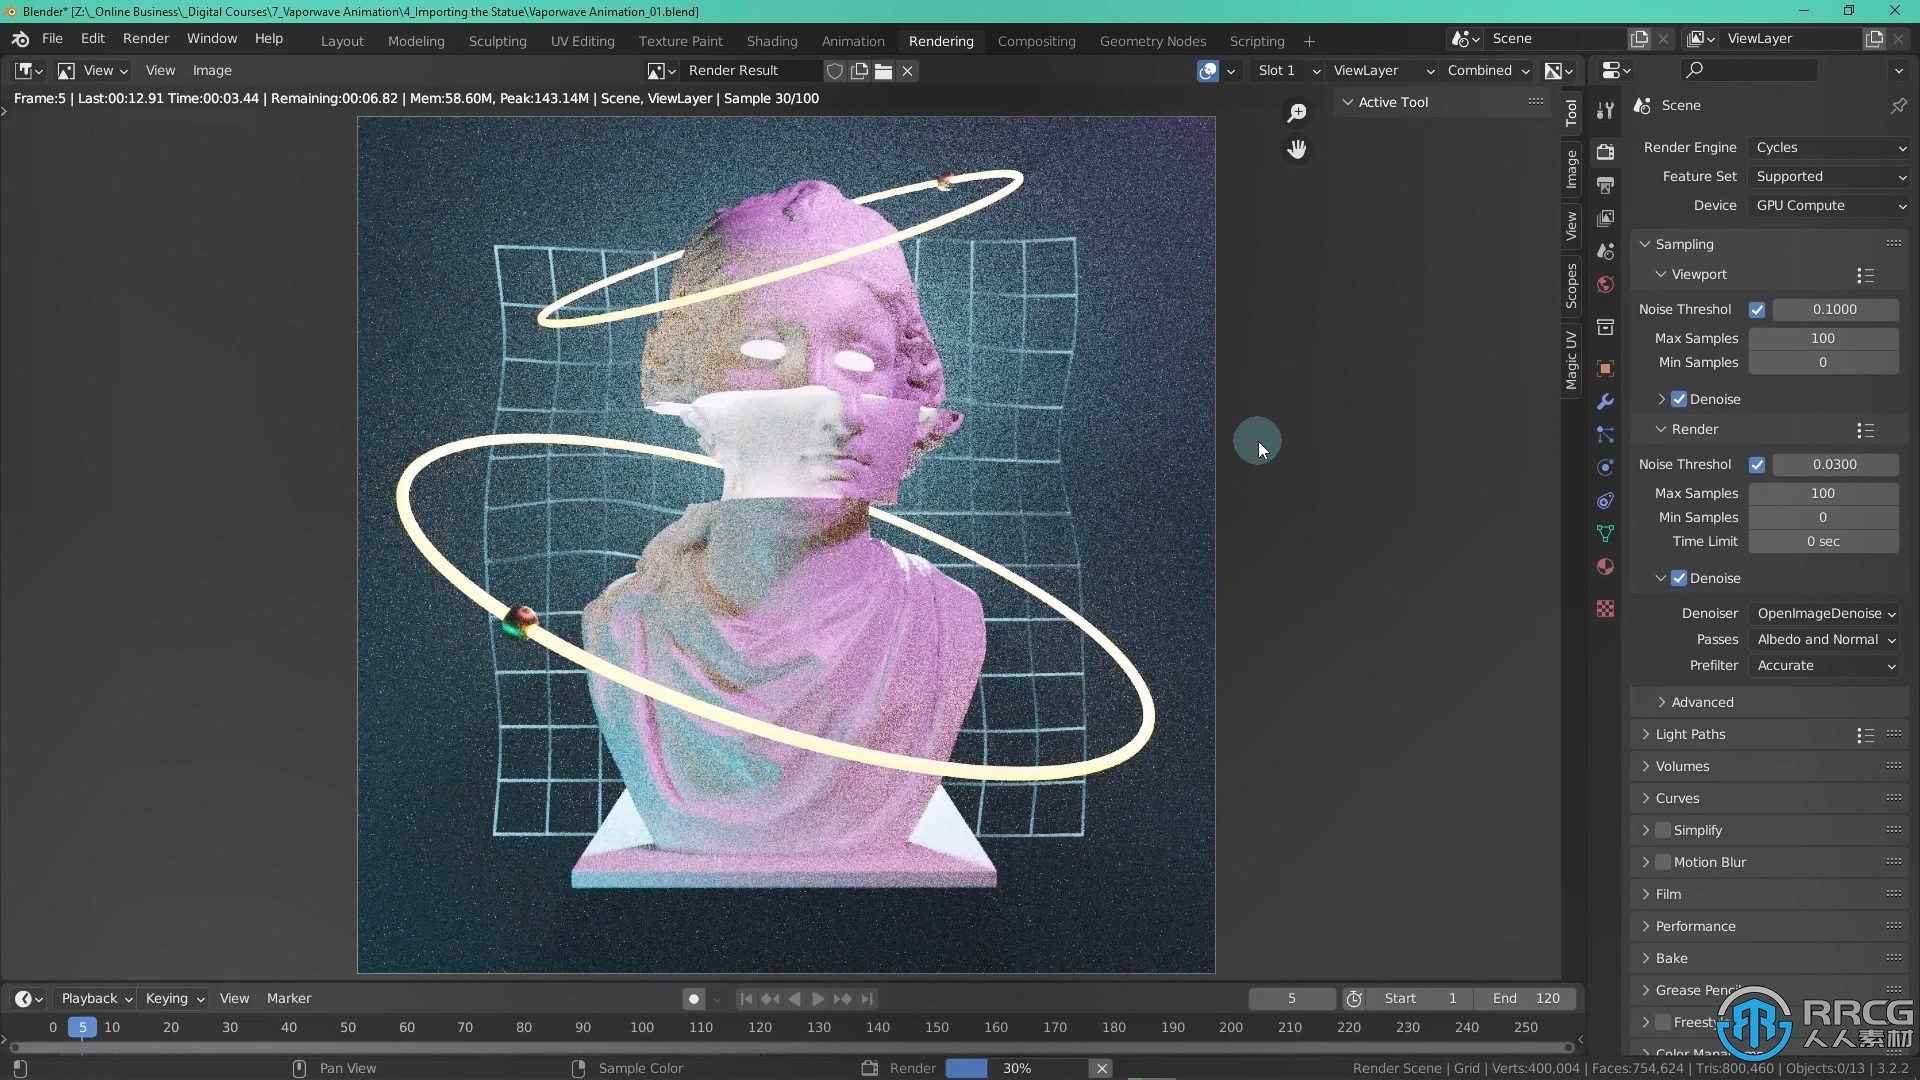 Blender复古霓虹波动画实例制作视频教程